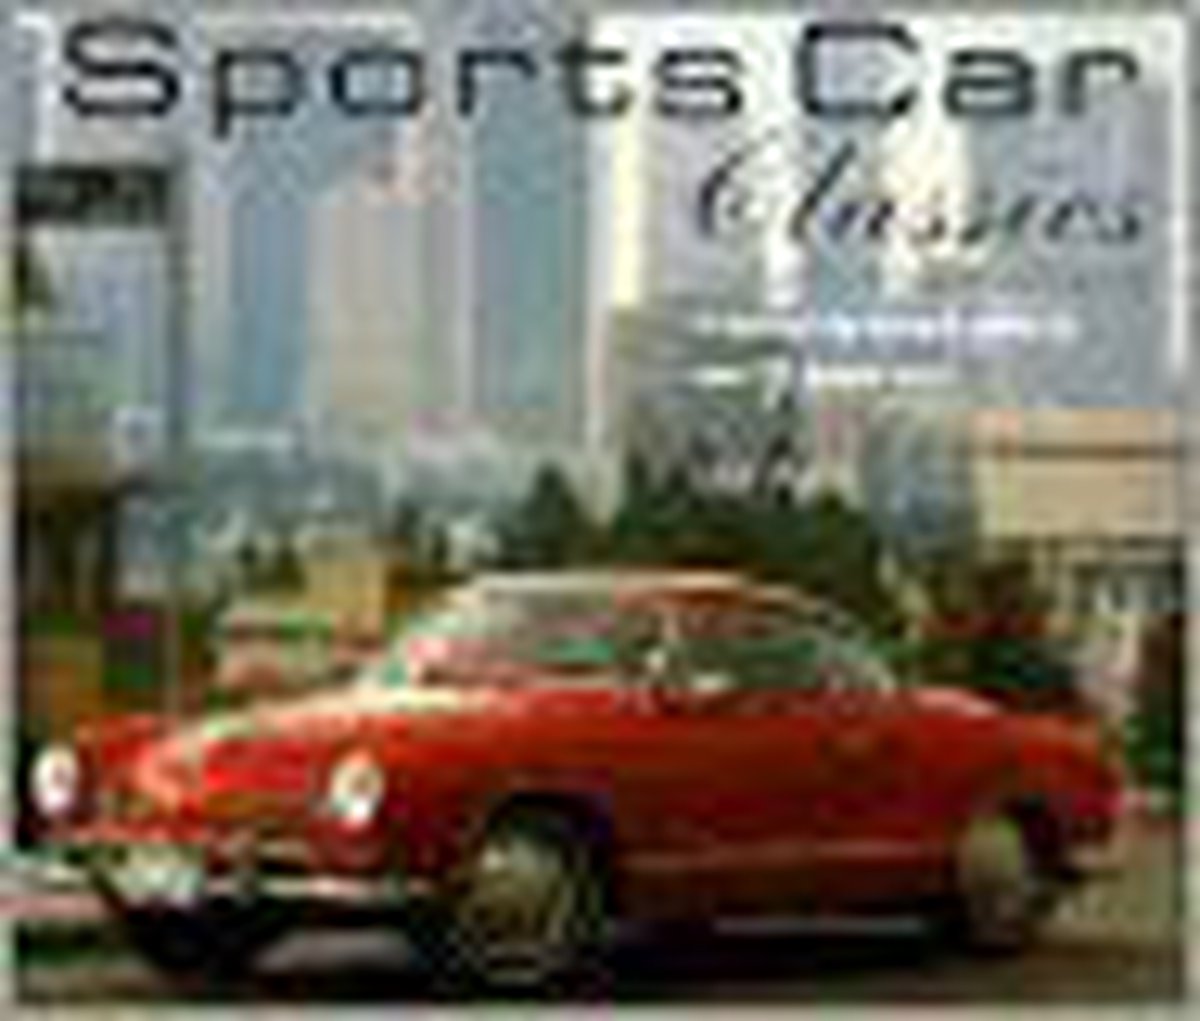 Sports Car Classics